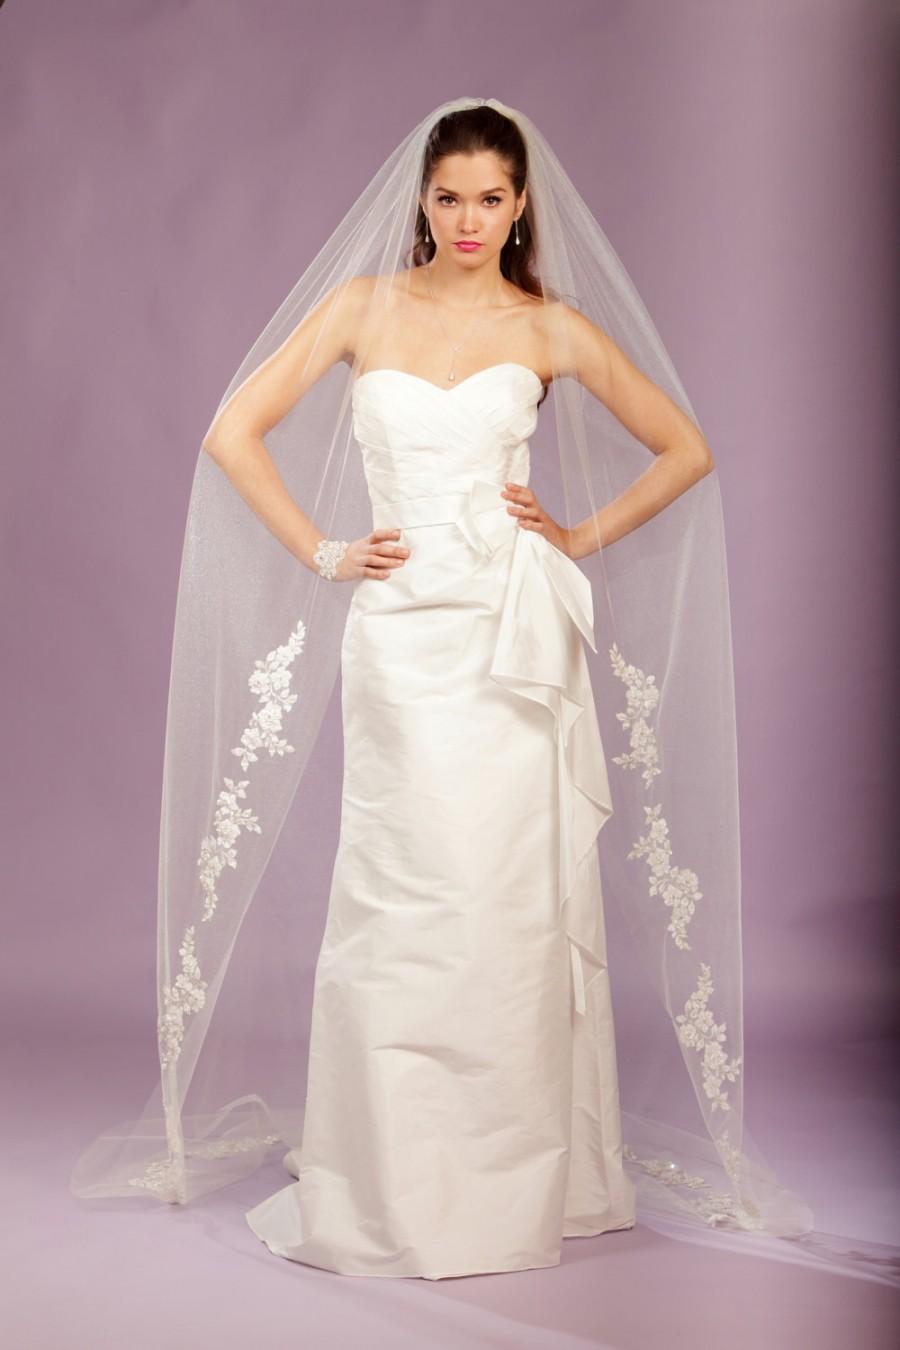 زفاف - Wedding Veil -Cathedral Veil, FRENCH Appliques Adorned with Swarovski Crystals, Embroidery, and Sequins - made to order